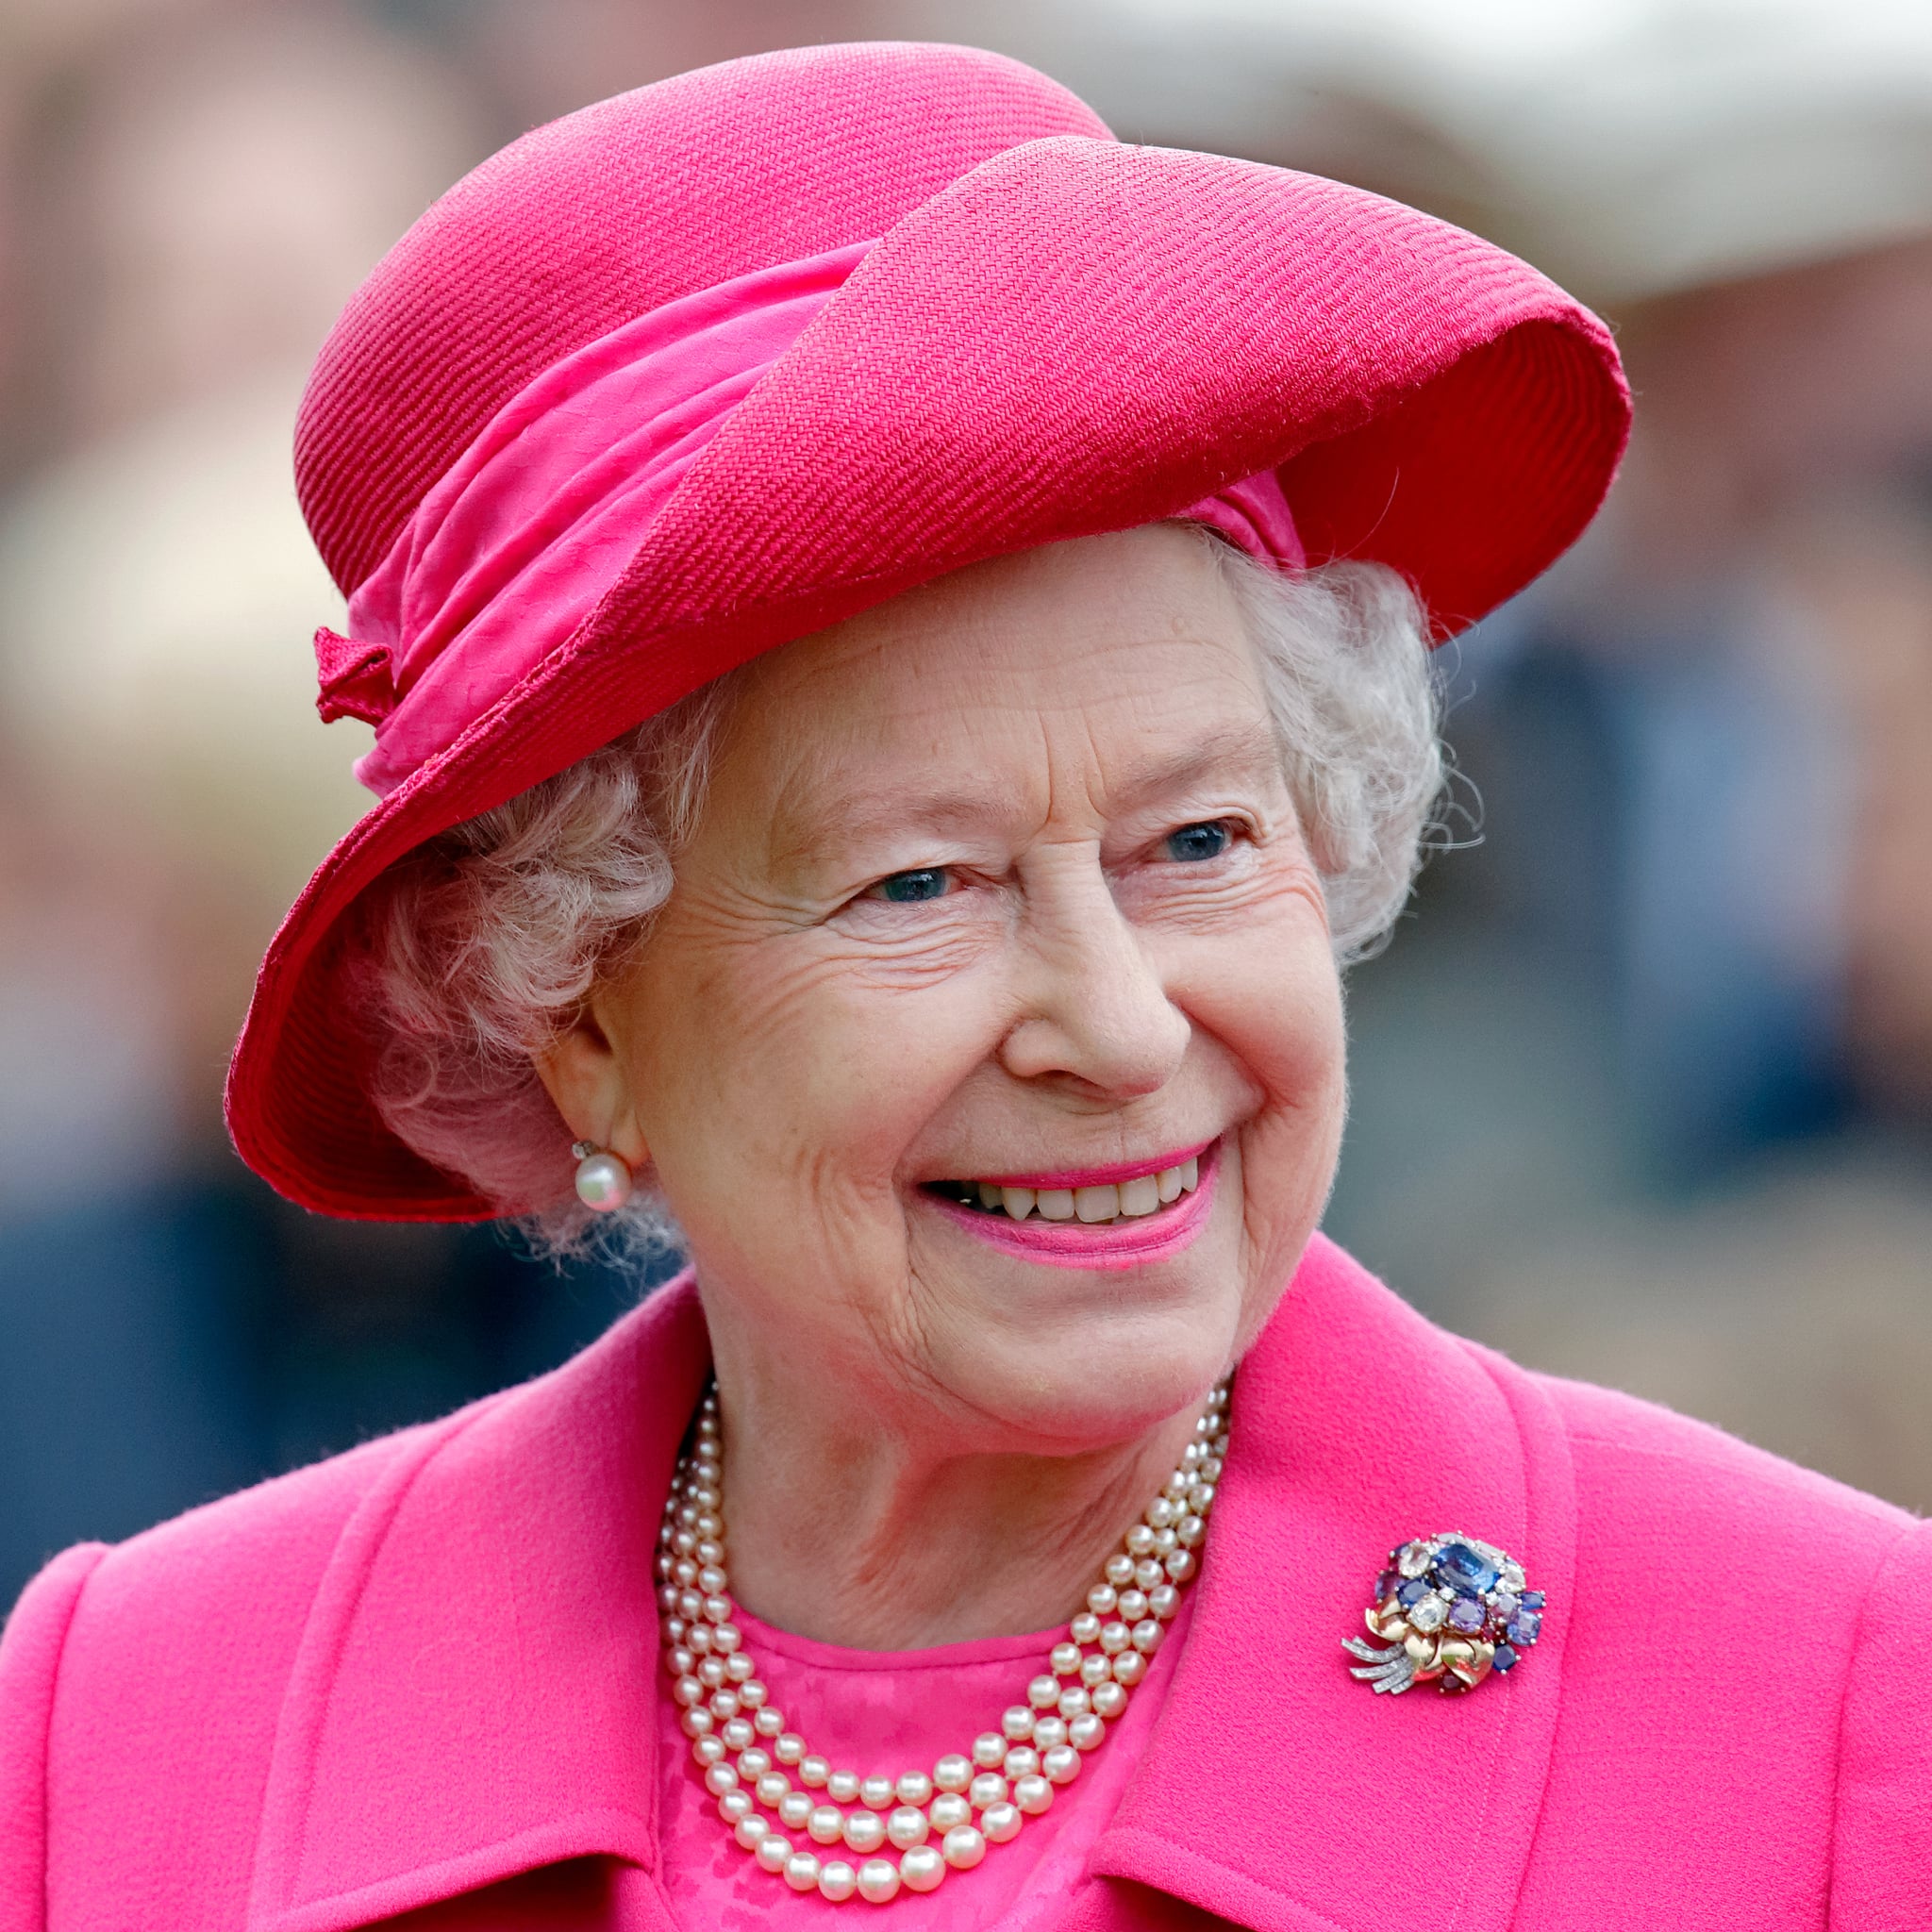 Queen Elizabeth II's Most Iconic Beauty Looks | POPSUGAR Beauty